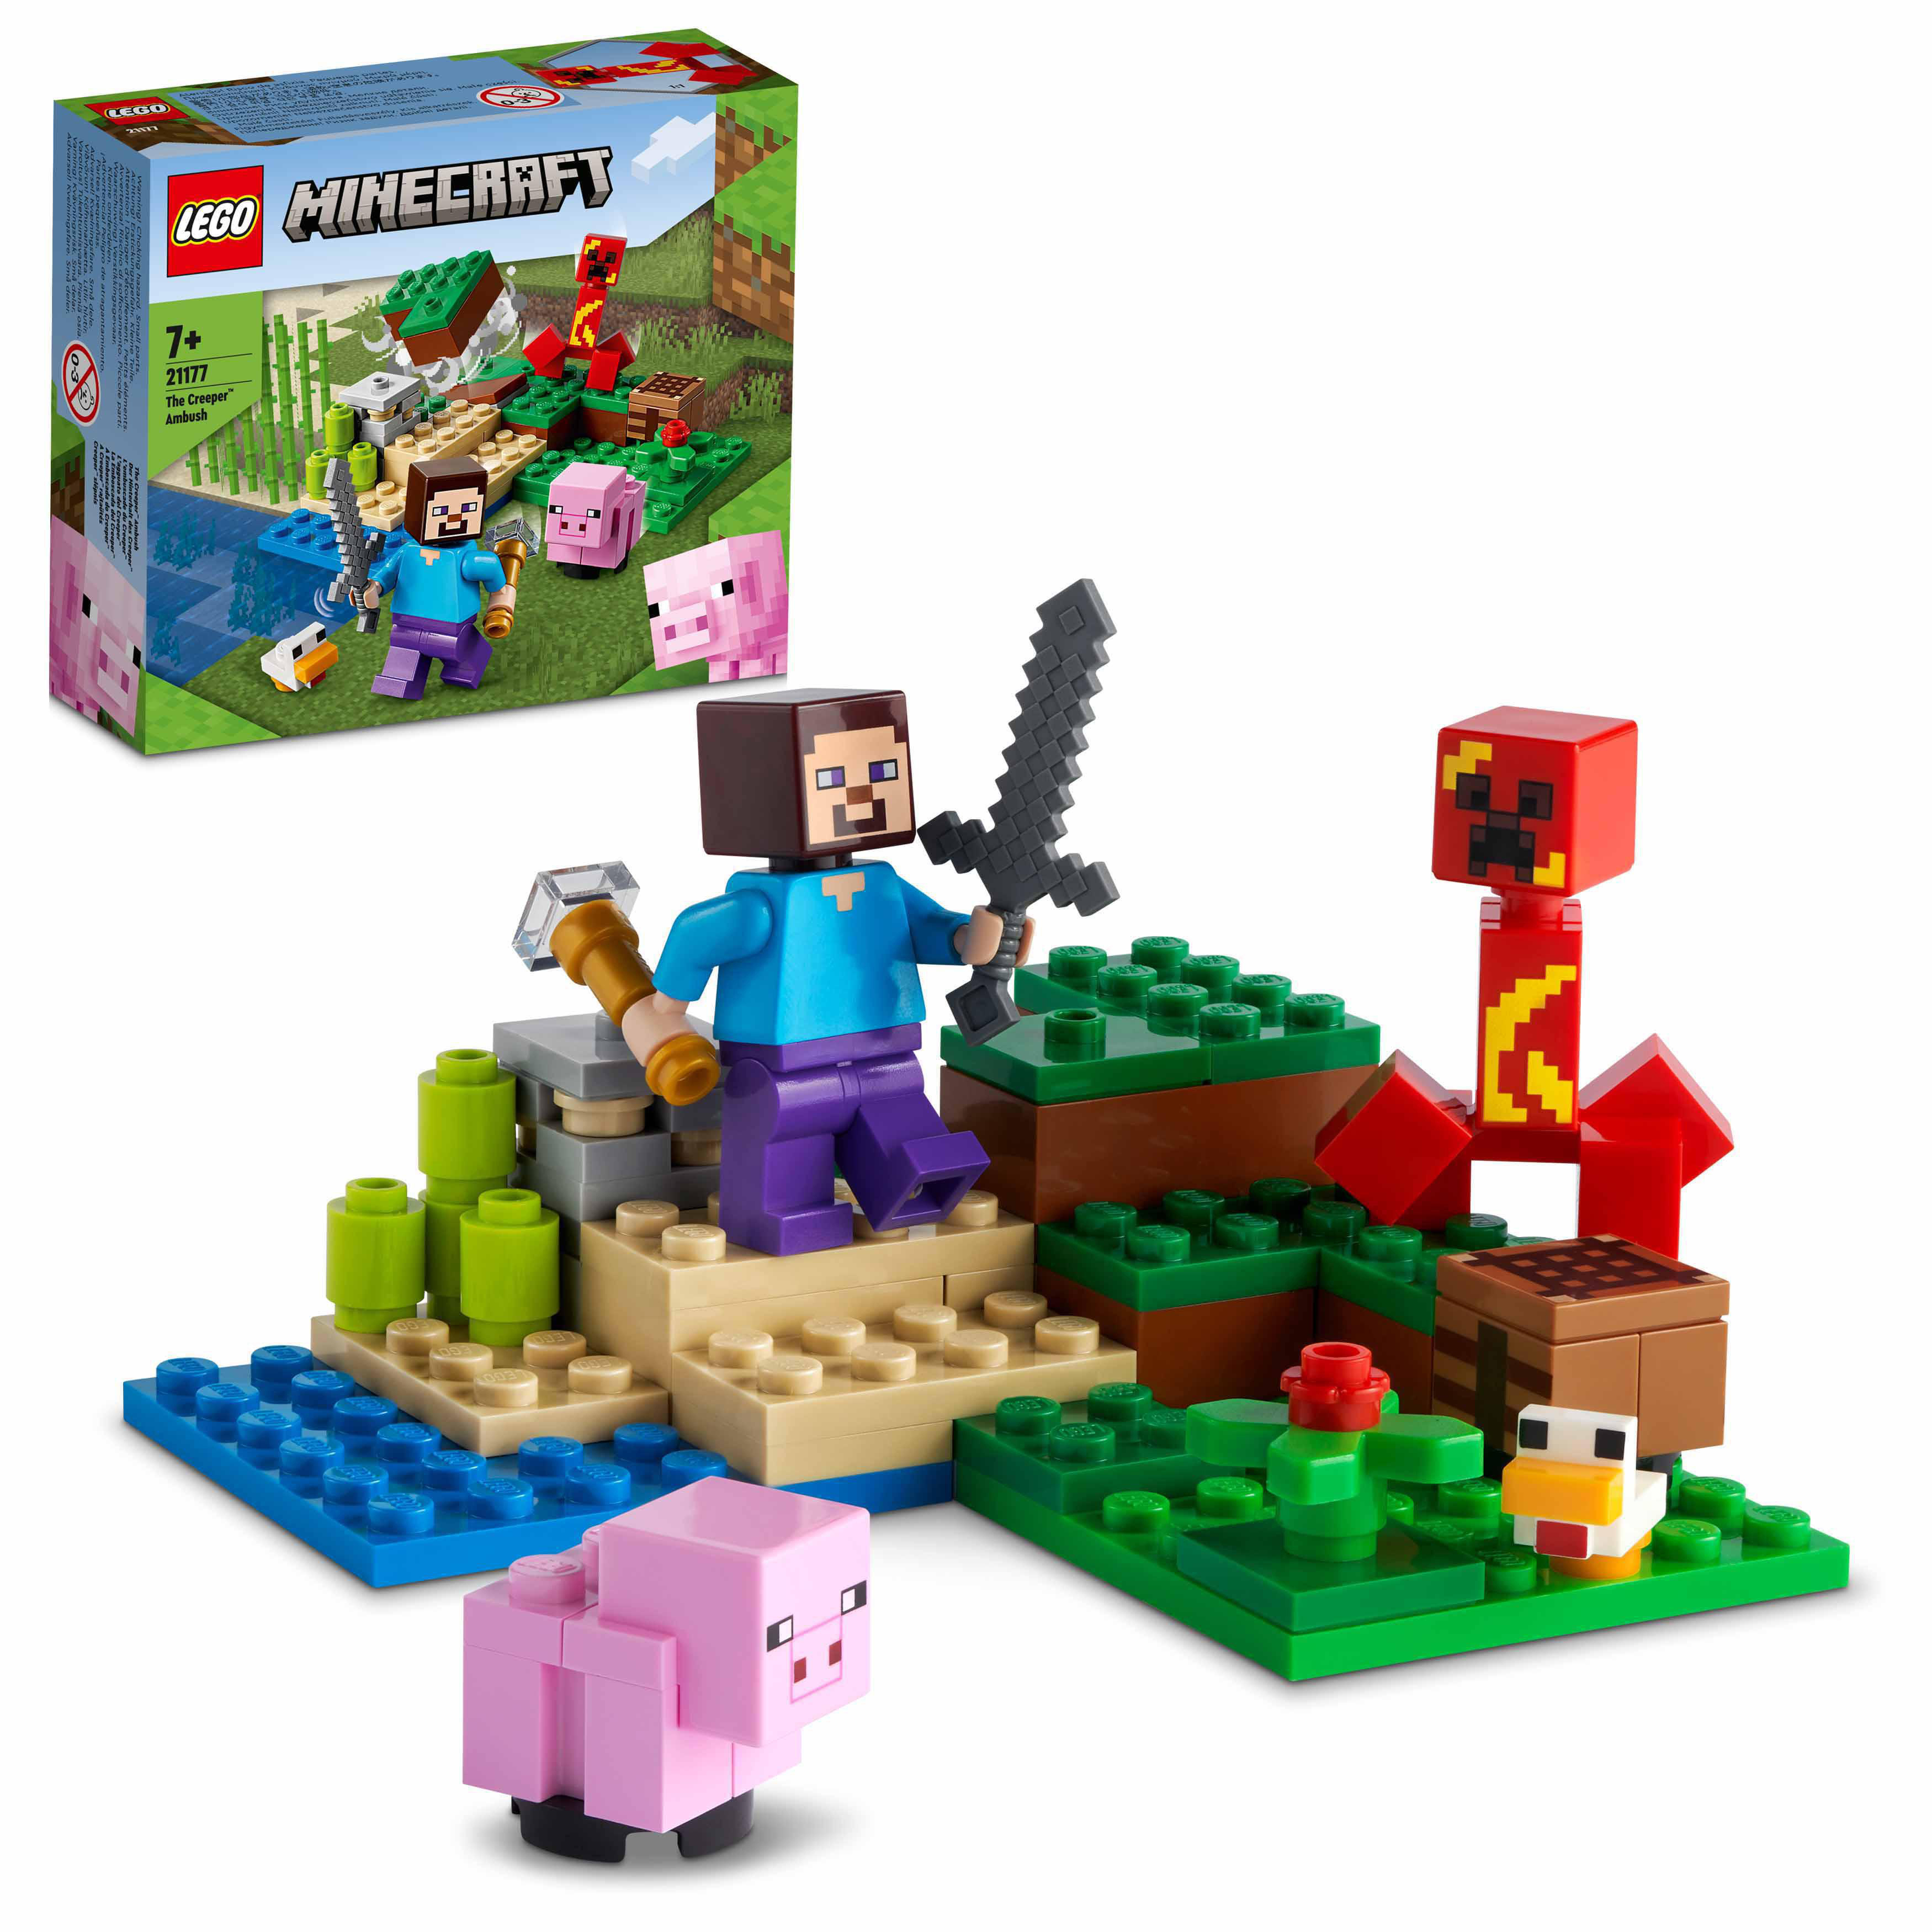 Bausatz, des 21177 Creeper™ Der Hinterhalt LEGO Minecraft Mehrfarbig